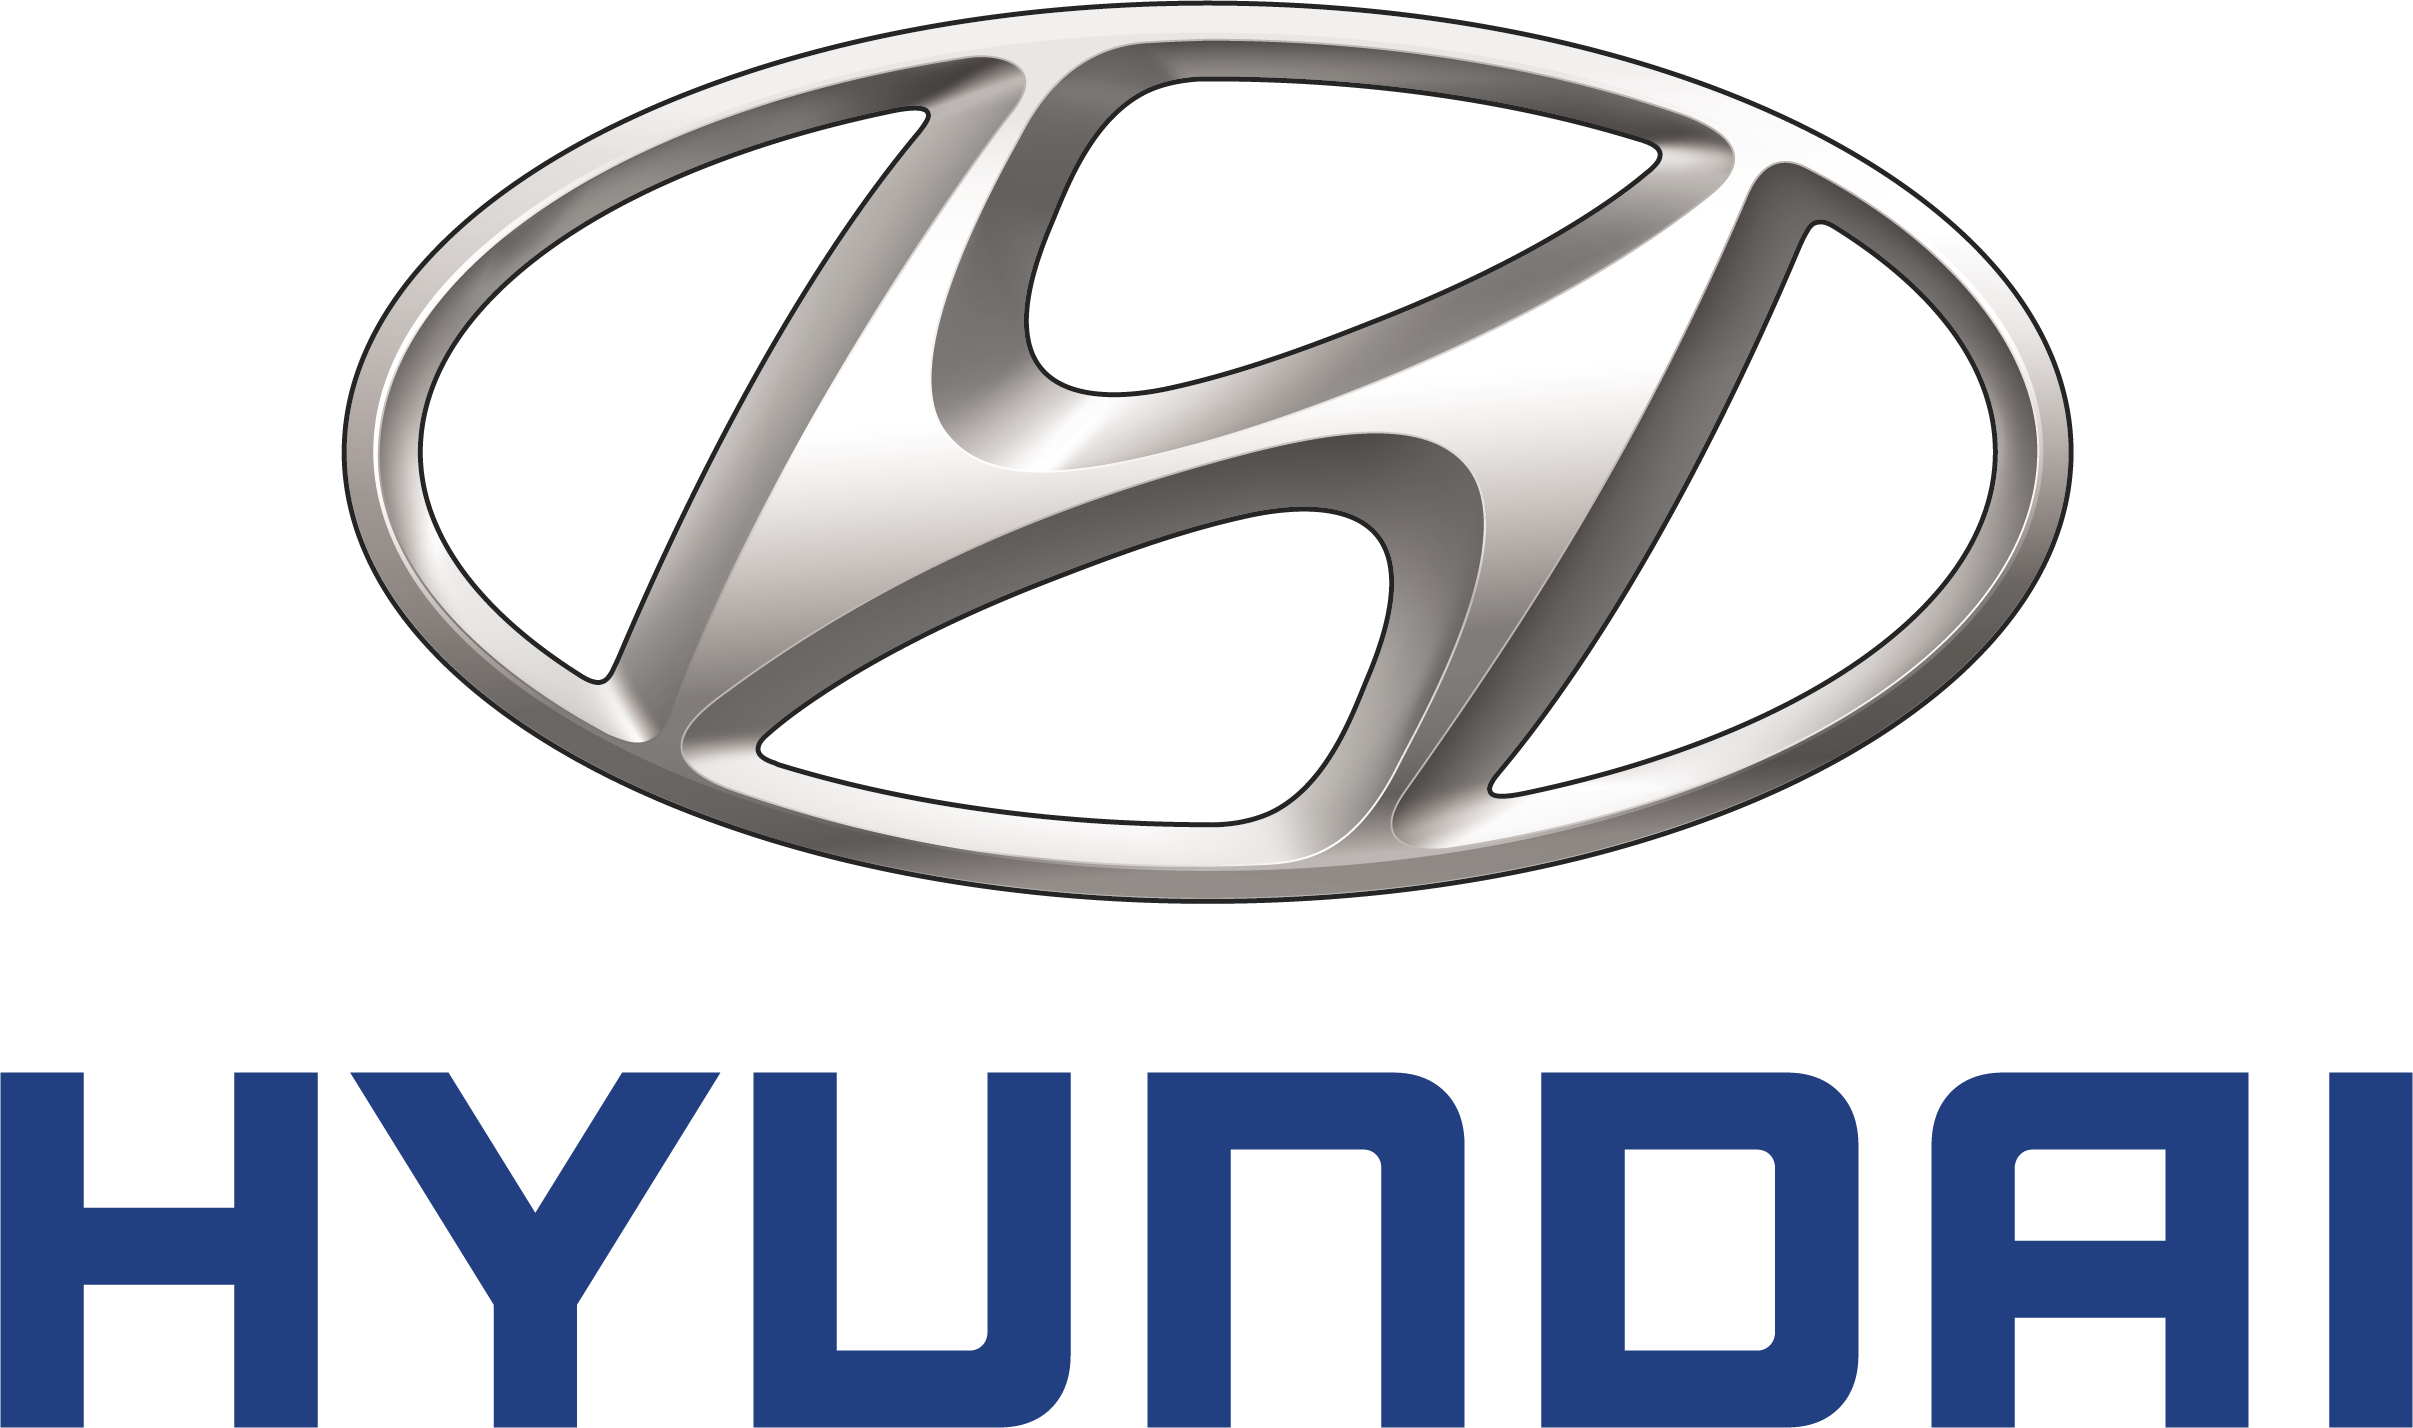 Elenco modelli Hyundai per neopatentati